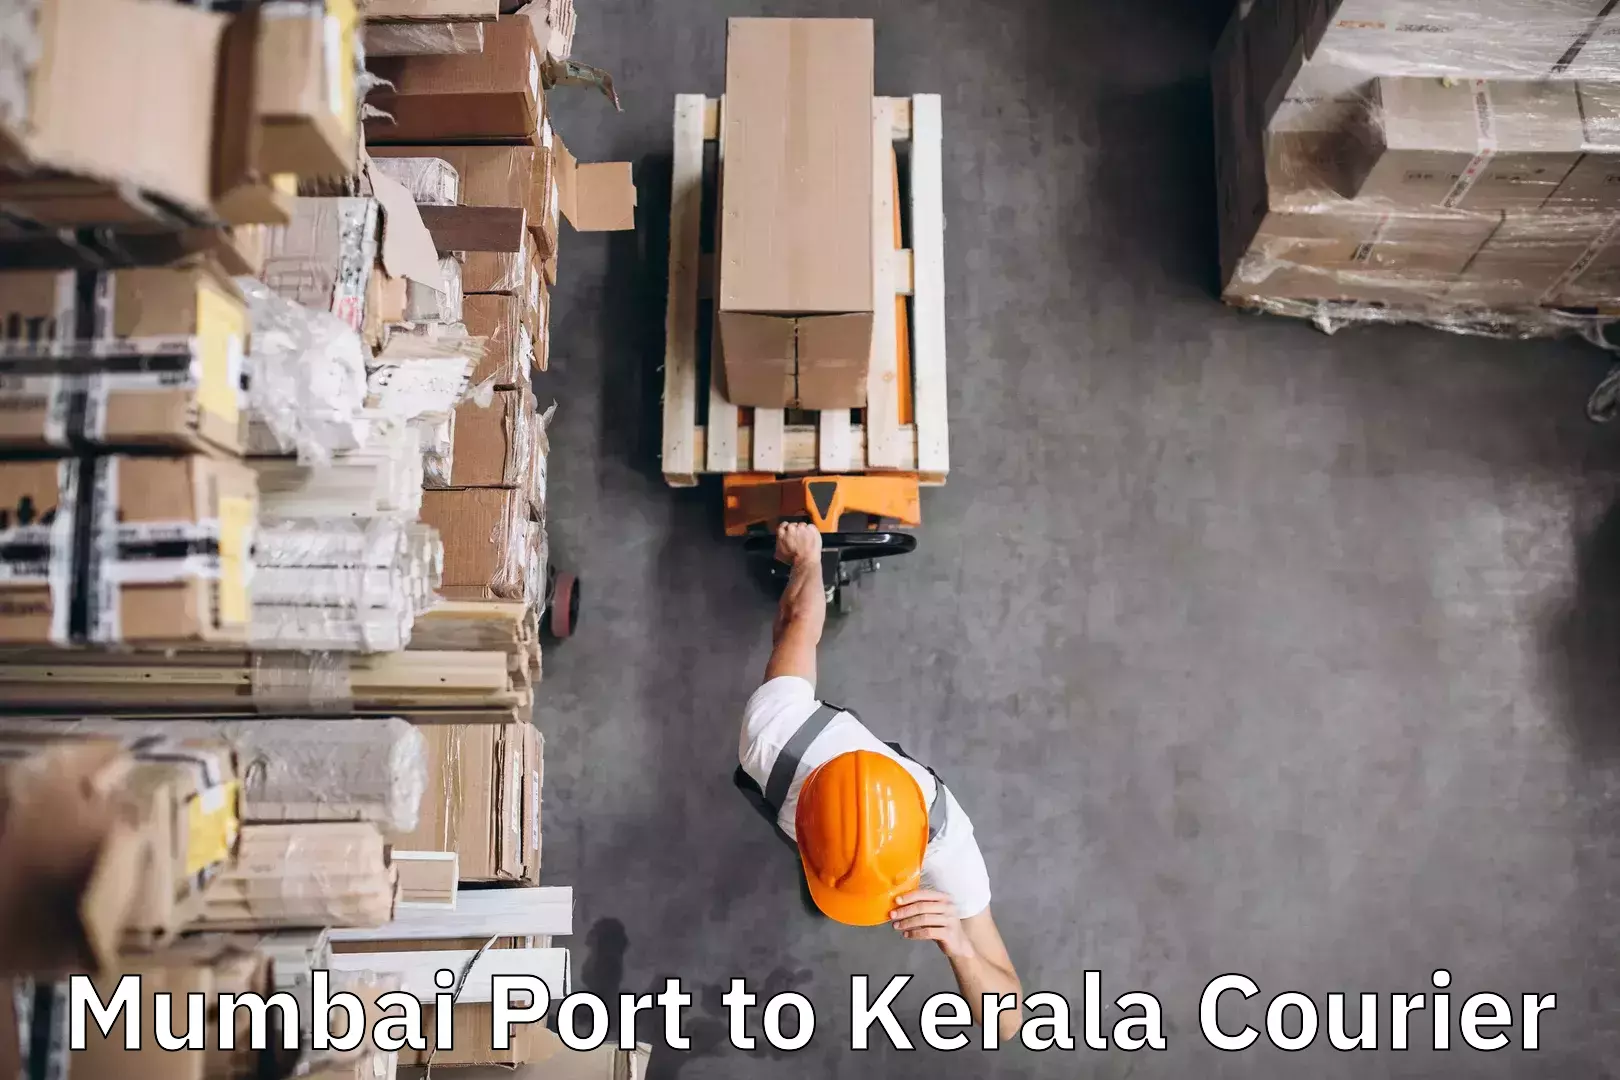 Timely baggage transport Mumbai Port to Kerala